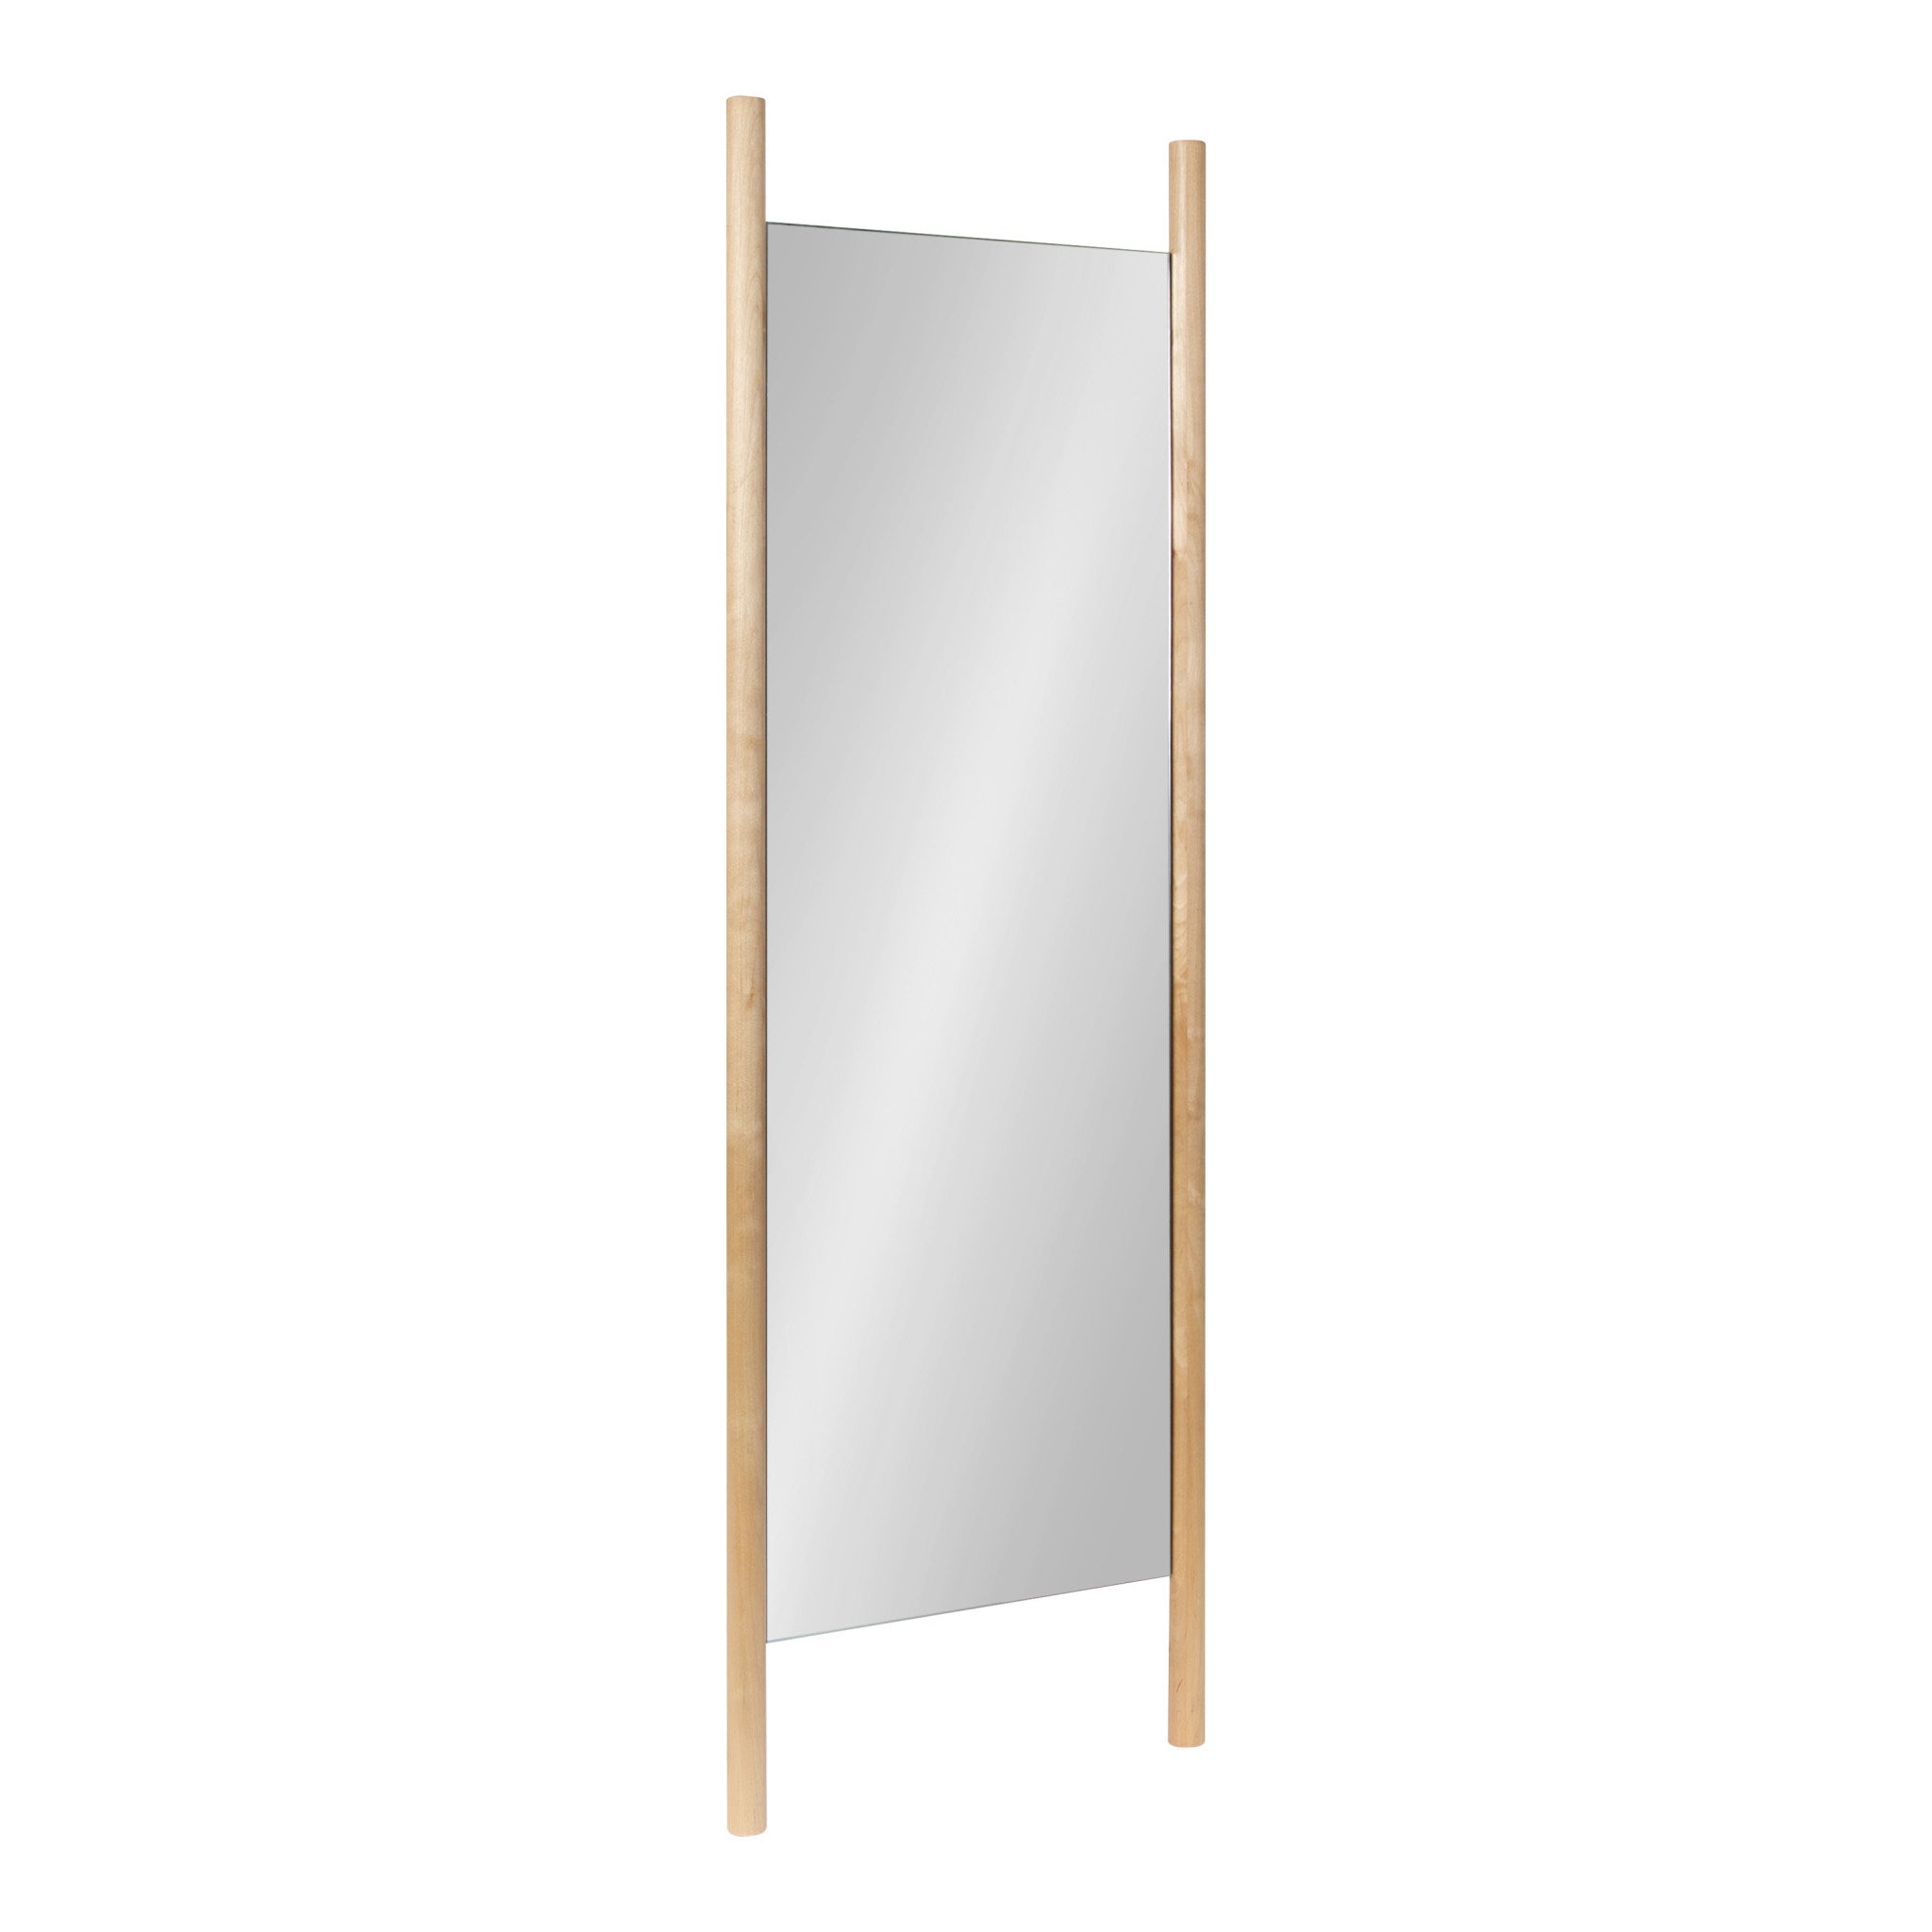 Findlay Wood Wall Leaner Mirror